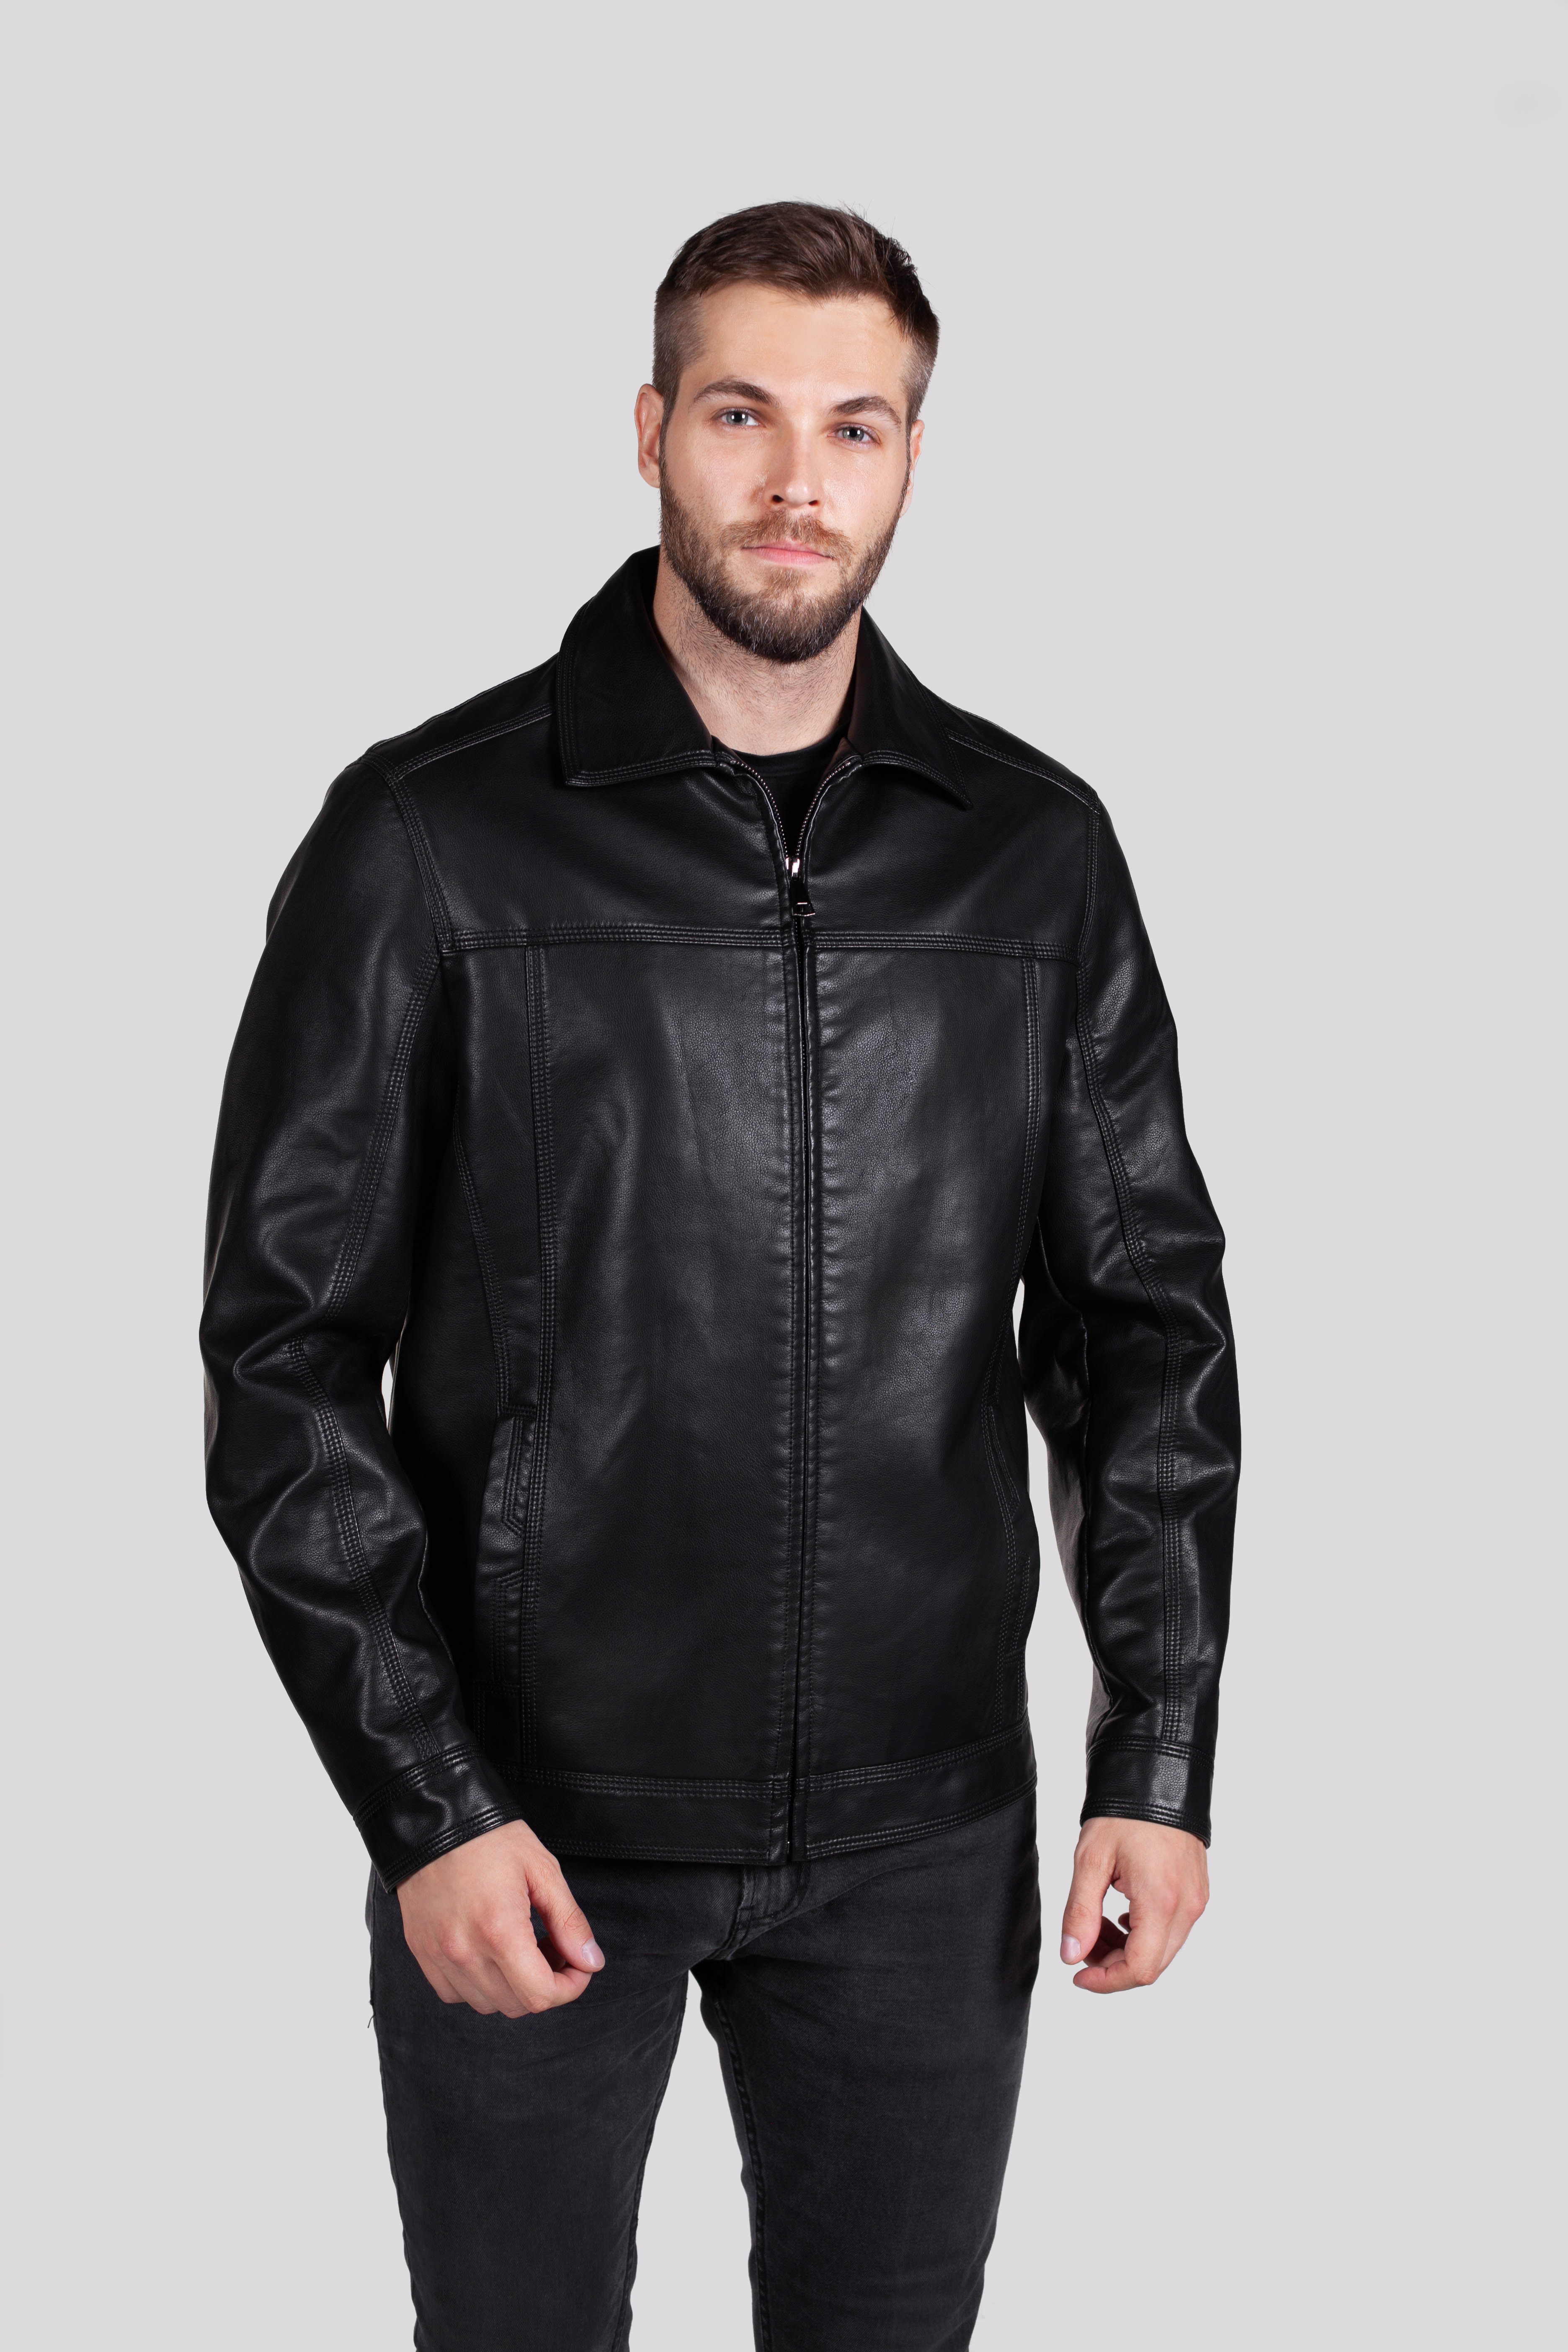 Кожаная куртка мужская RATSKA 631 черная 50 RU